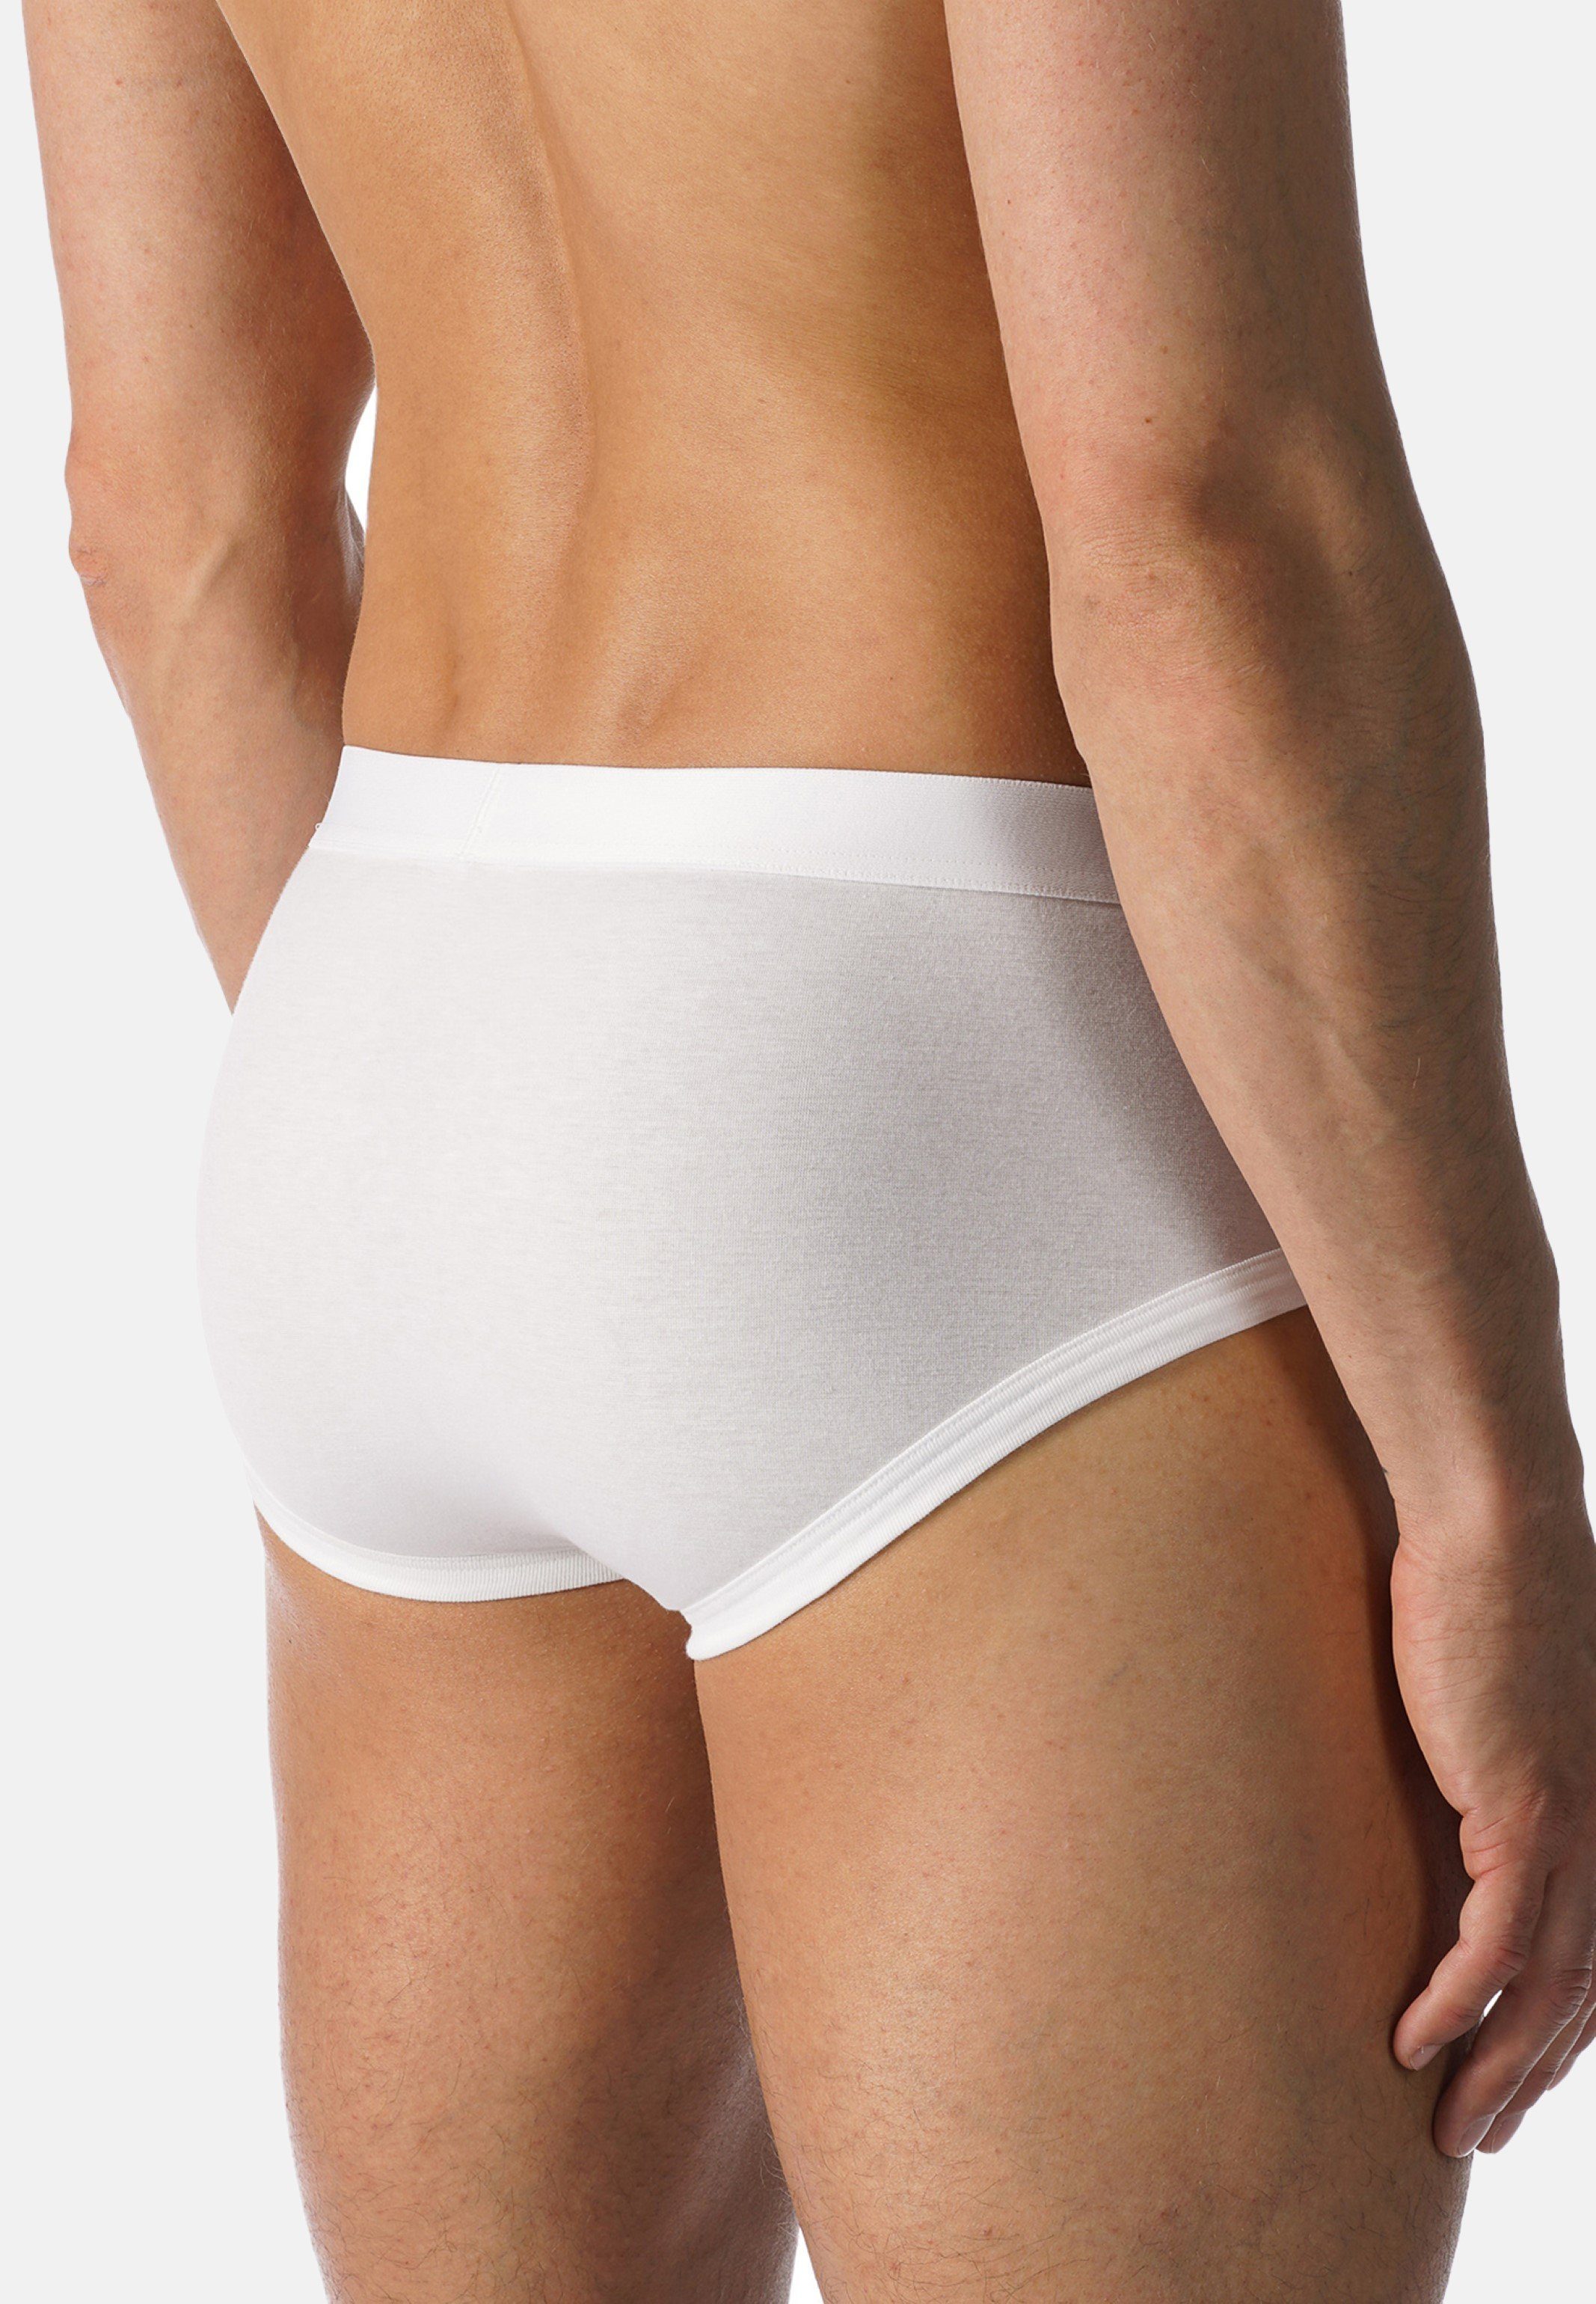 Mey Slip Casual Cotton (1-St) Aufgesetzter Ohne Unterhose - - Weiß Eingriff - / Webbund Slip Baumwolle